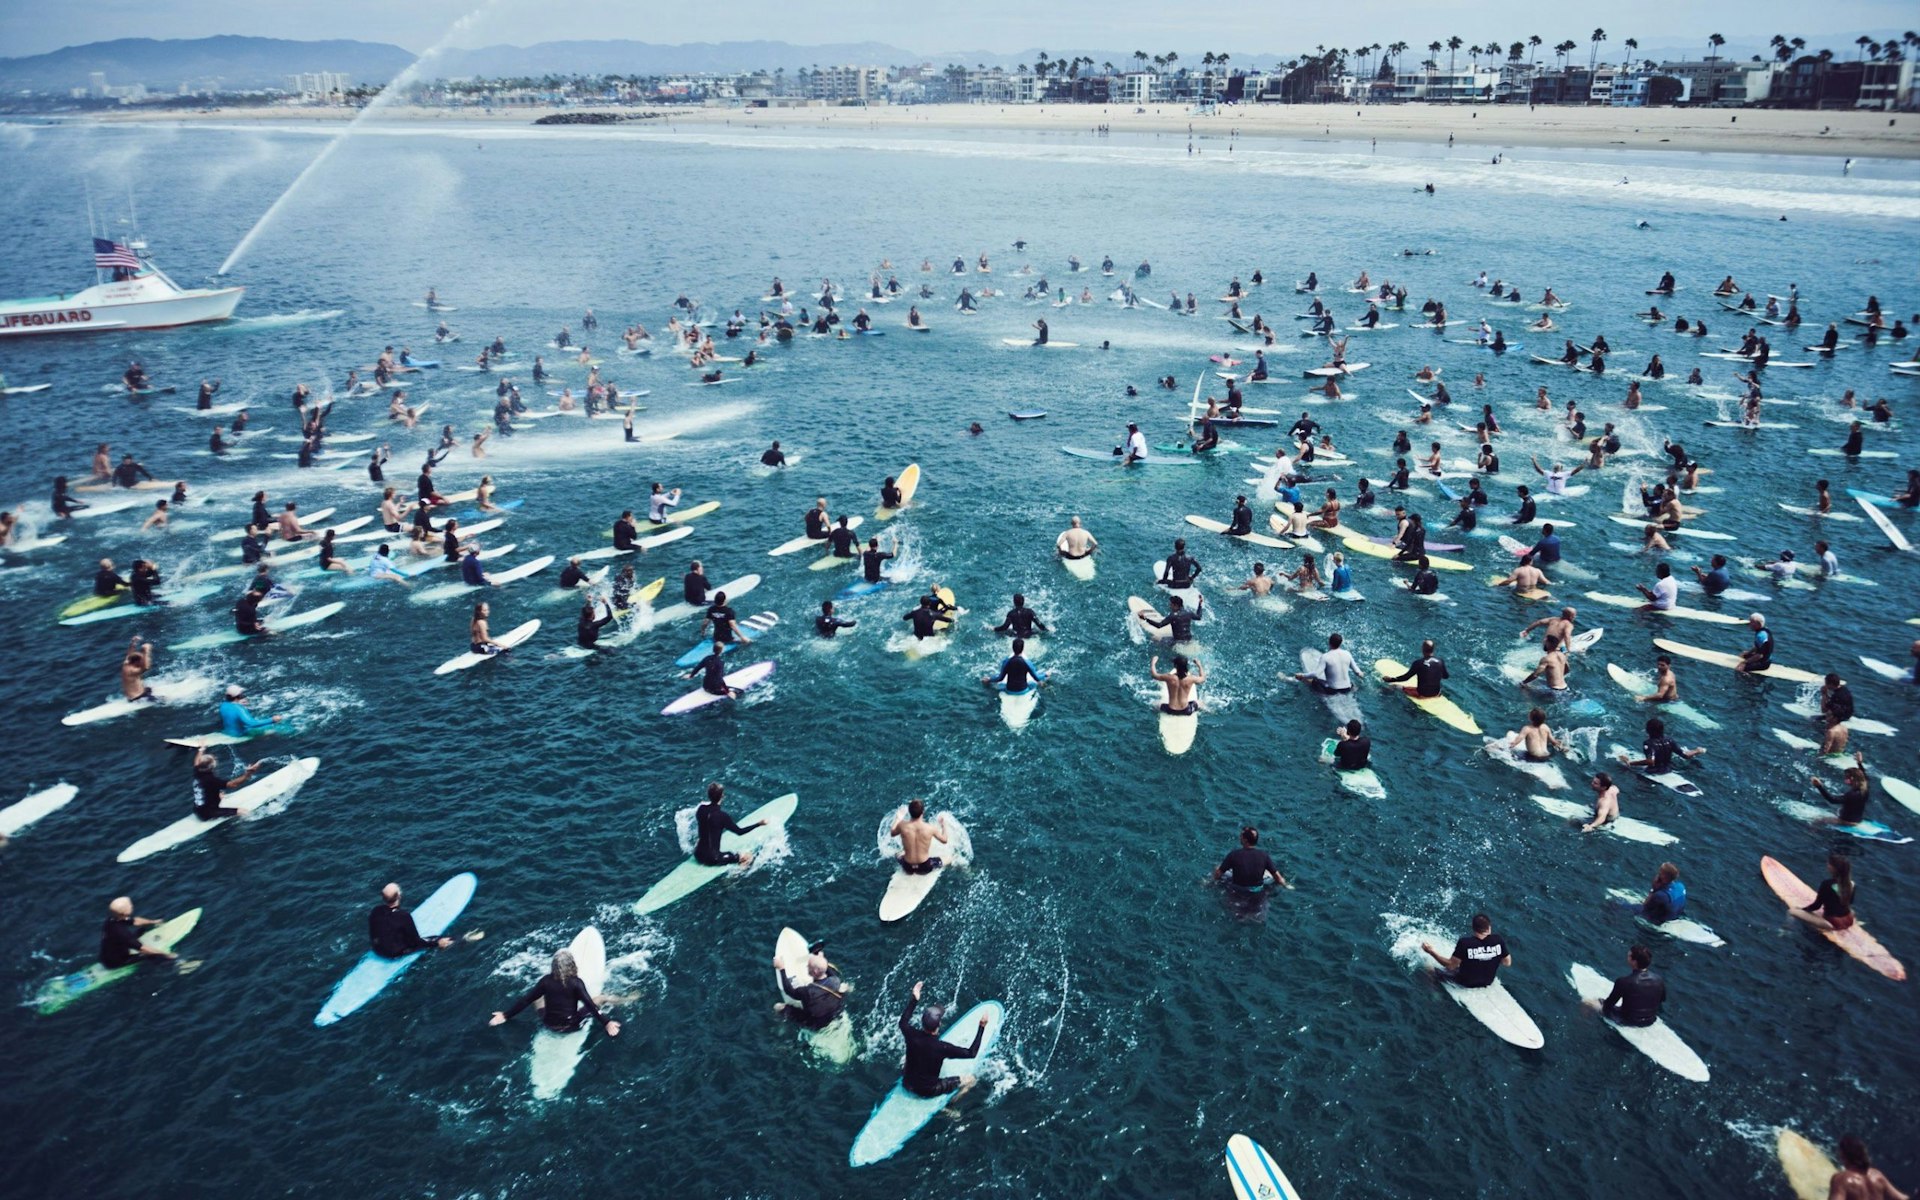 Photos celebrating California’s legendary surf culture